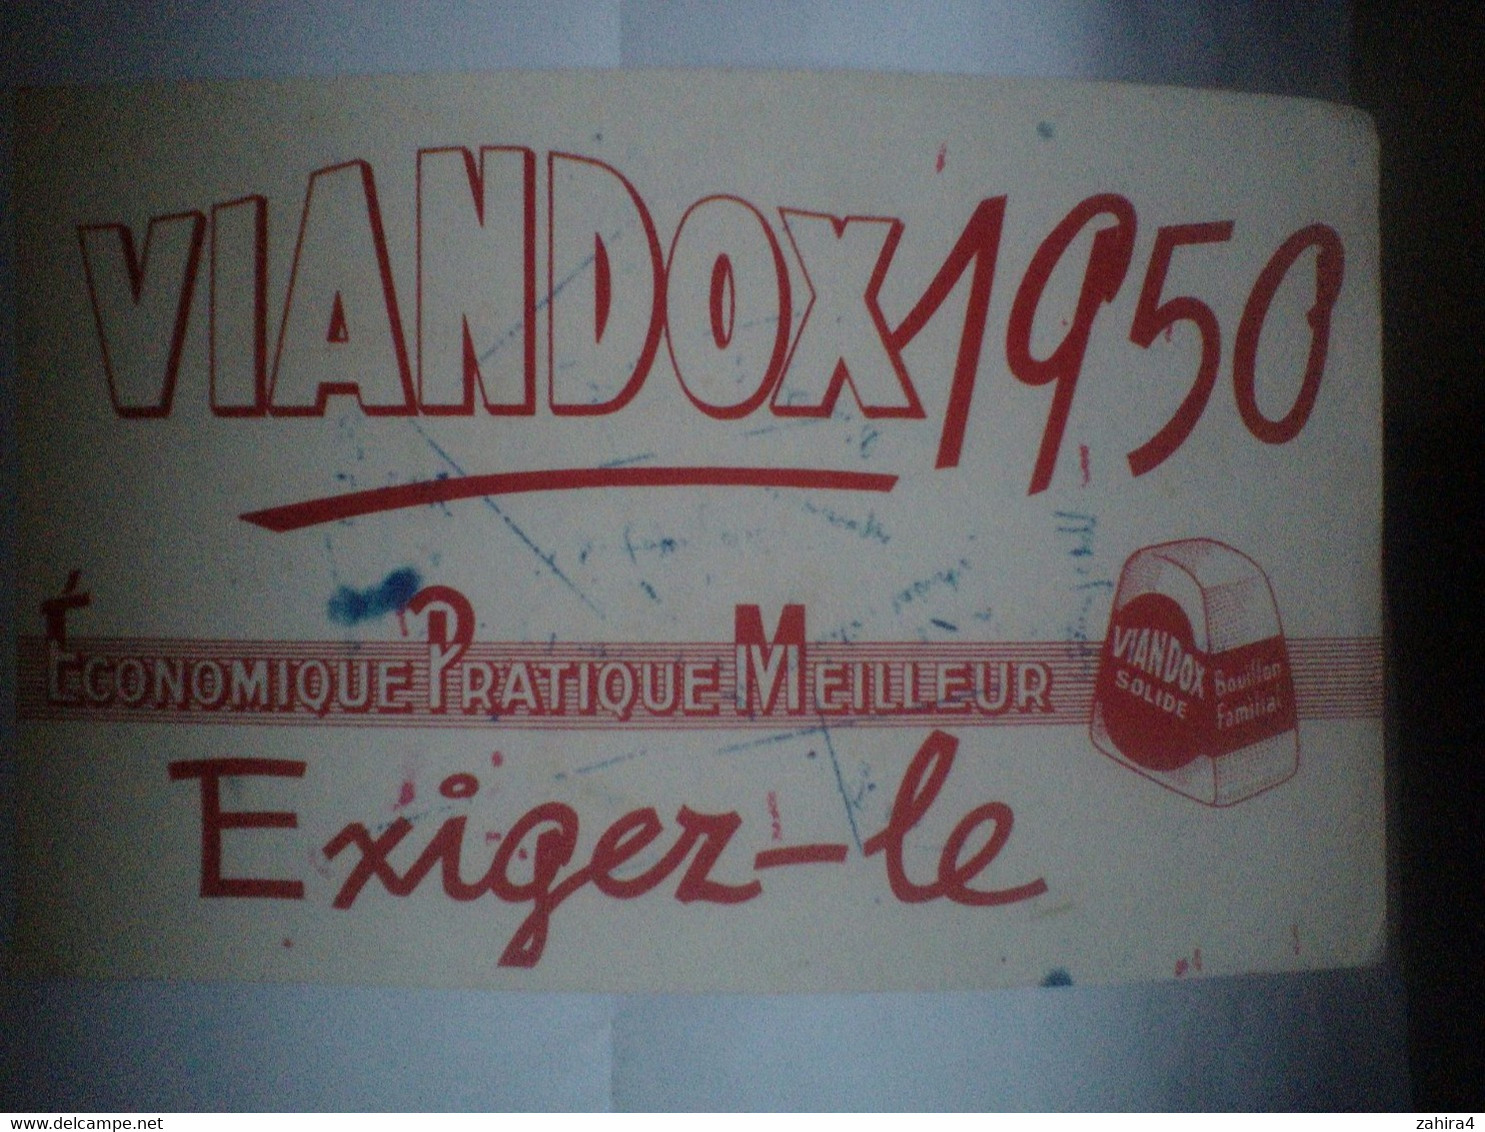 Viandox 1950 - Economique Pratique Meilleur - Exiger-le - Bouillon Familial - Soep En Saus